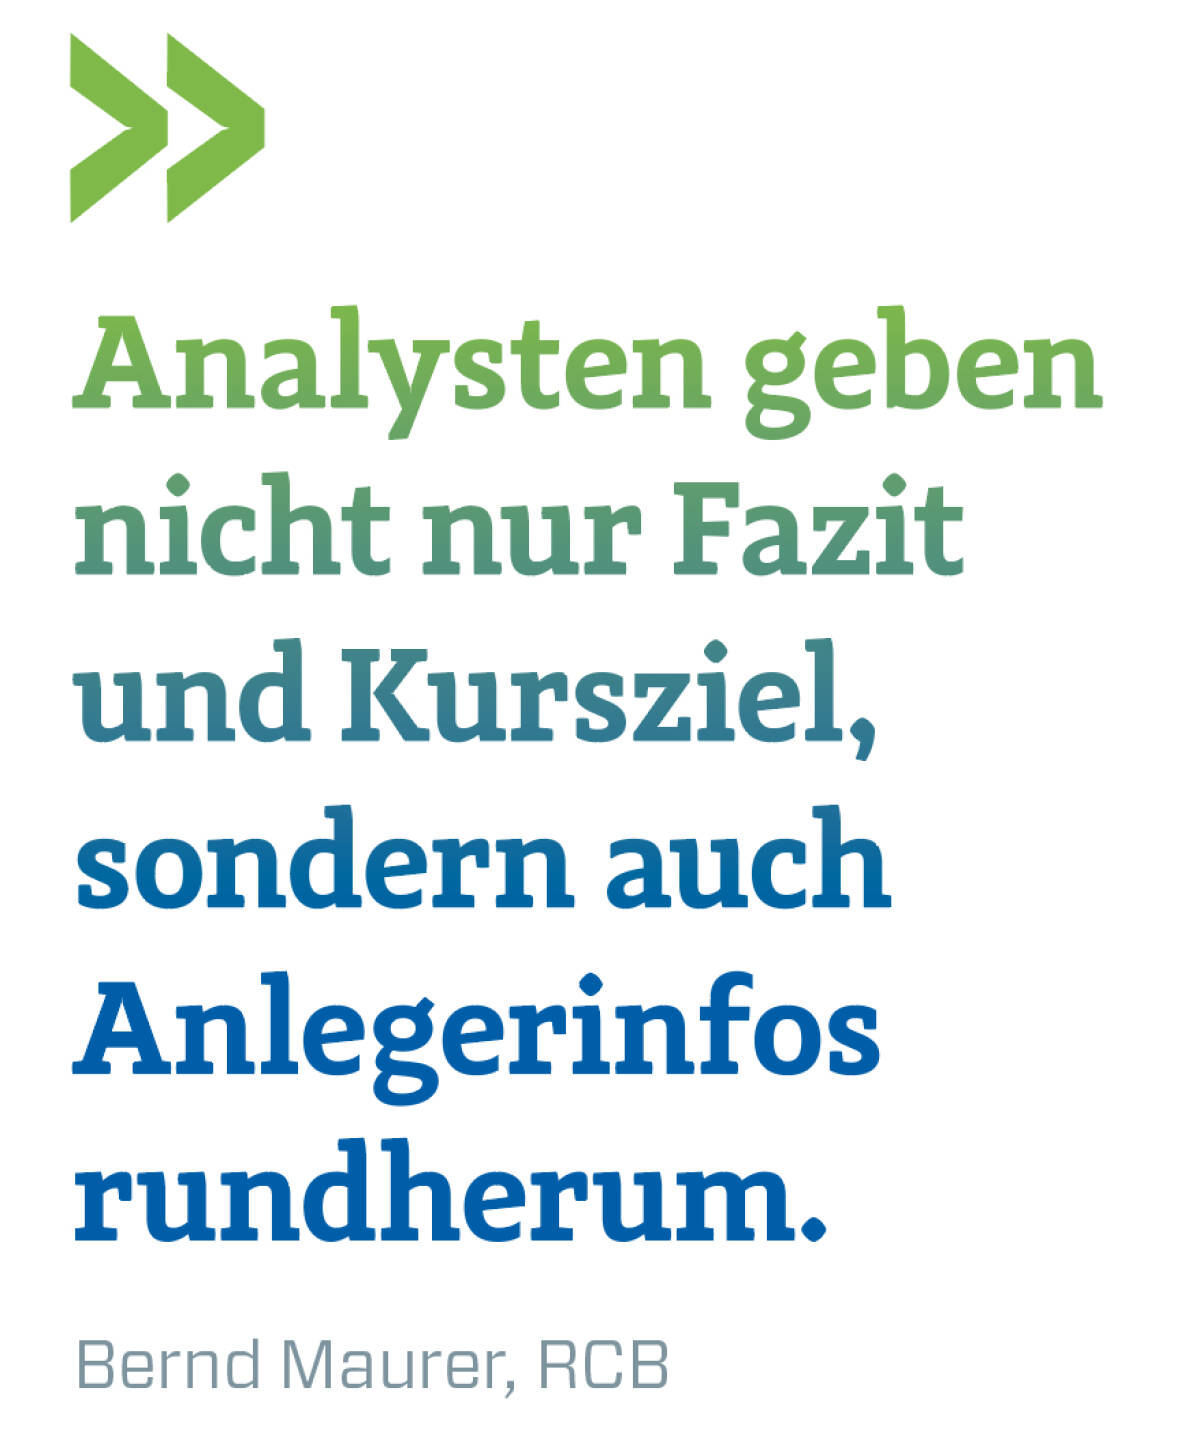 Analysten geben nicht nur Fazit und Kursziel, sondern auch Anlegerinfos rundherum.
Bernd Maurer, RCB